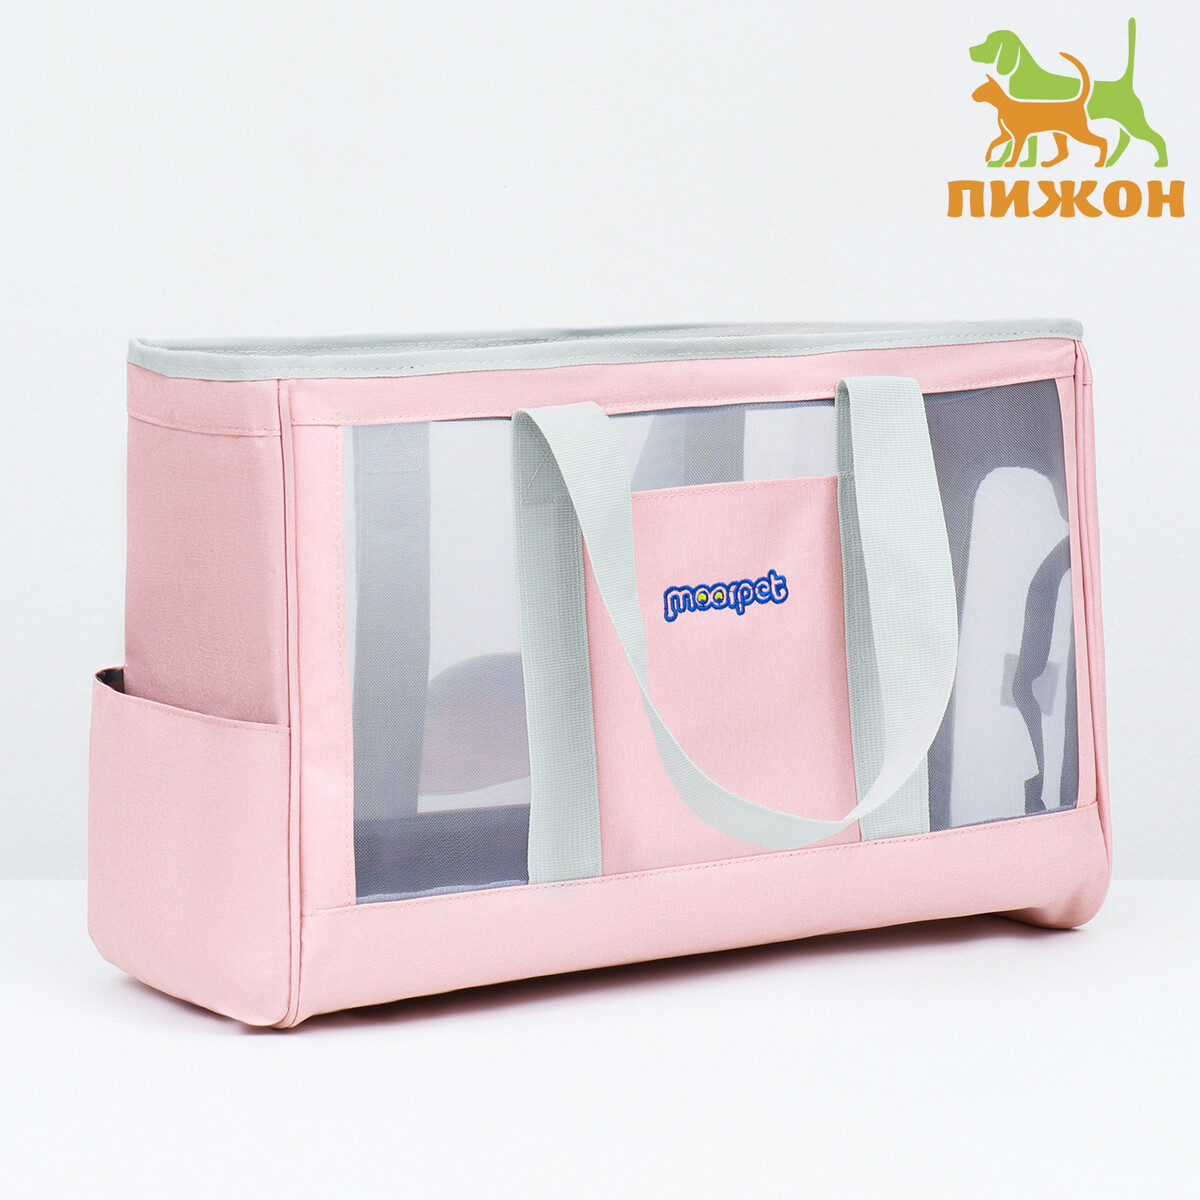 Сумка-переноска для животных с раздвижным окном, 24 х 25 х 41 см, розовая сумка переноска с окном иллюминатором малая 39х25х20 см резиновые ножки